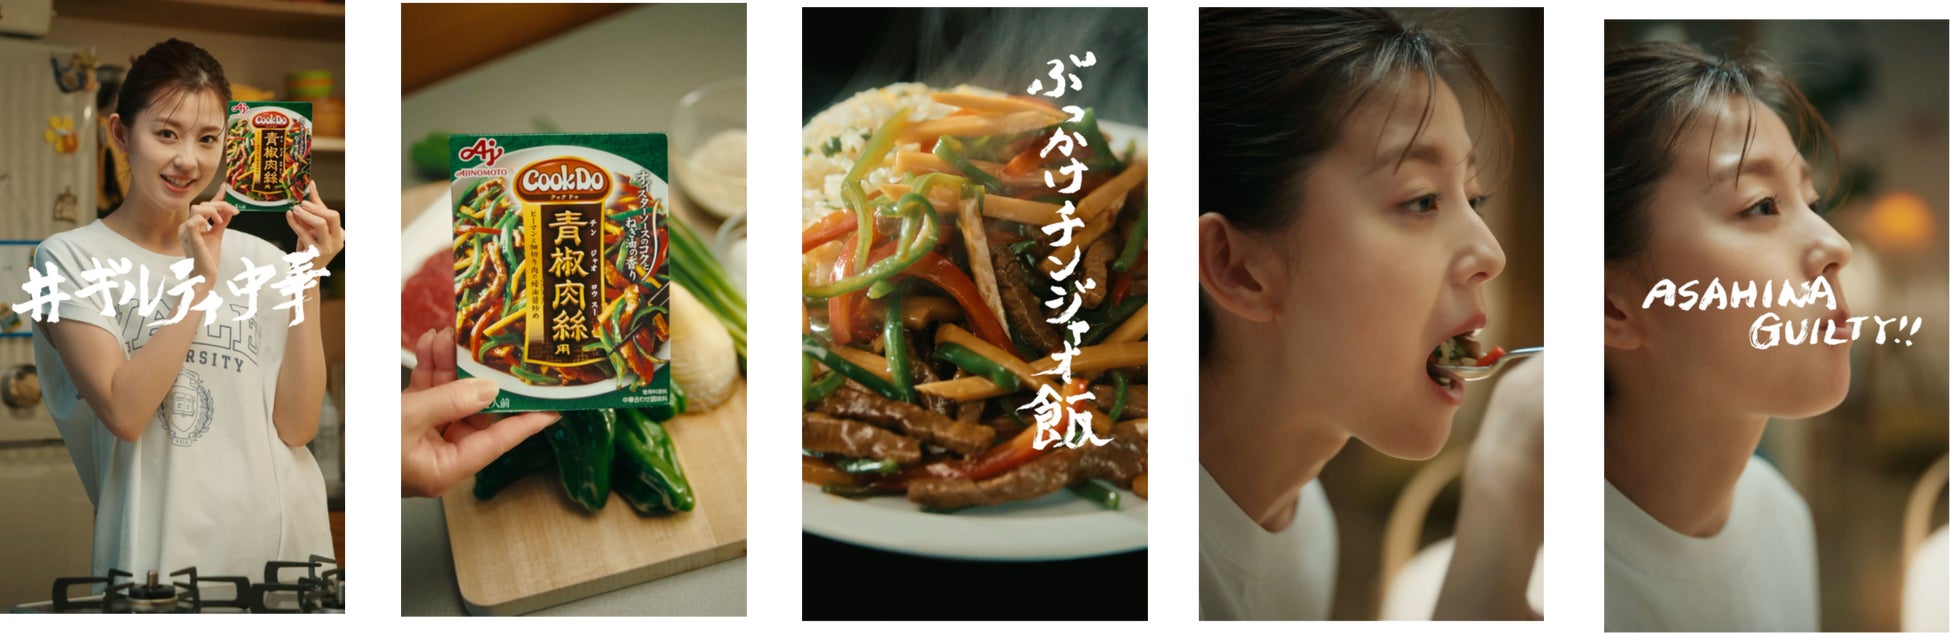 美ボディを誇る朝比奈彩さんが一心不乱に食べる！「Cook Do®」がチートデイに新提案『ギルティ中華』のサブ画像6